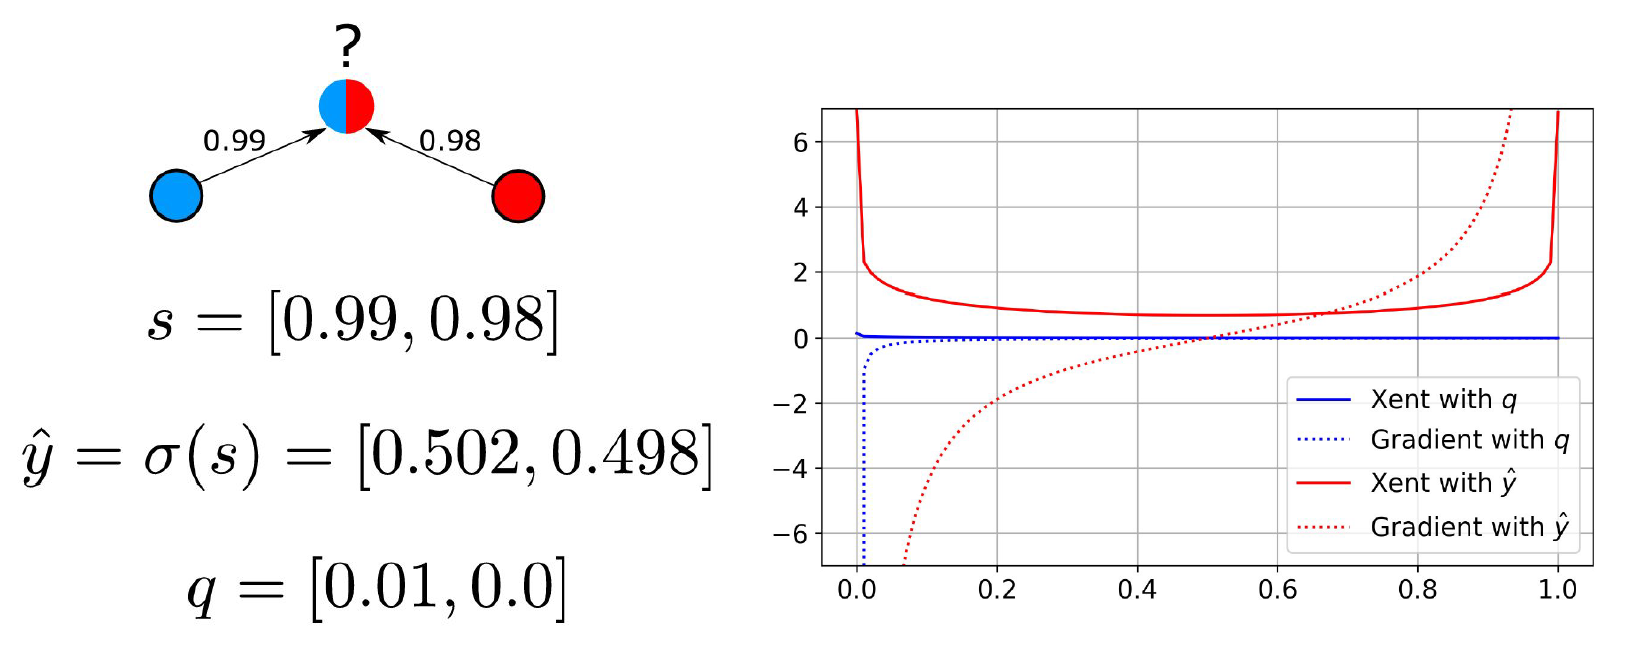 画像 6 は、数式 (左) とグラフ (右) を組み合わせたものです。グラフには、赤と青のクラスが含まれていて、これらのクラスは数学的に 1 つのベクトルと 2 つのラベルとして表現されています。右側は交差エントロピー分類誤差とその勾配のグラフです。赤い線はソフトマックスを表します。青い線は信頼性を表します。青い線は左から右へまっすぐに流れていますが、赤い線は 0 の上のグラフの一番上の部分が U 字型を形成しています。 